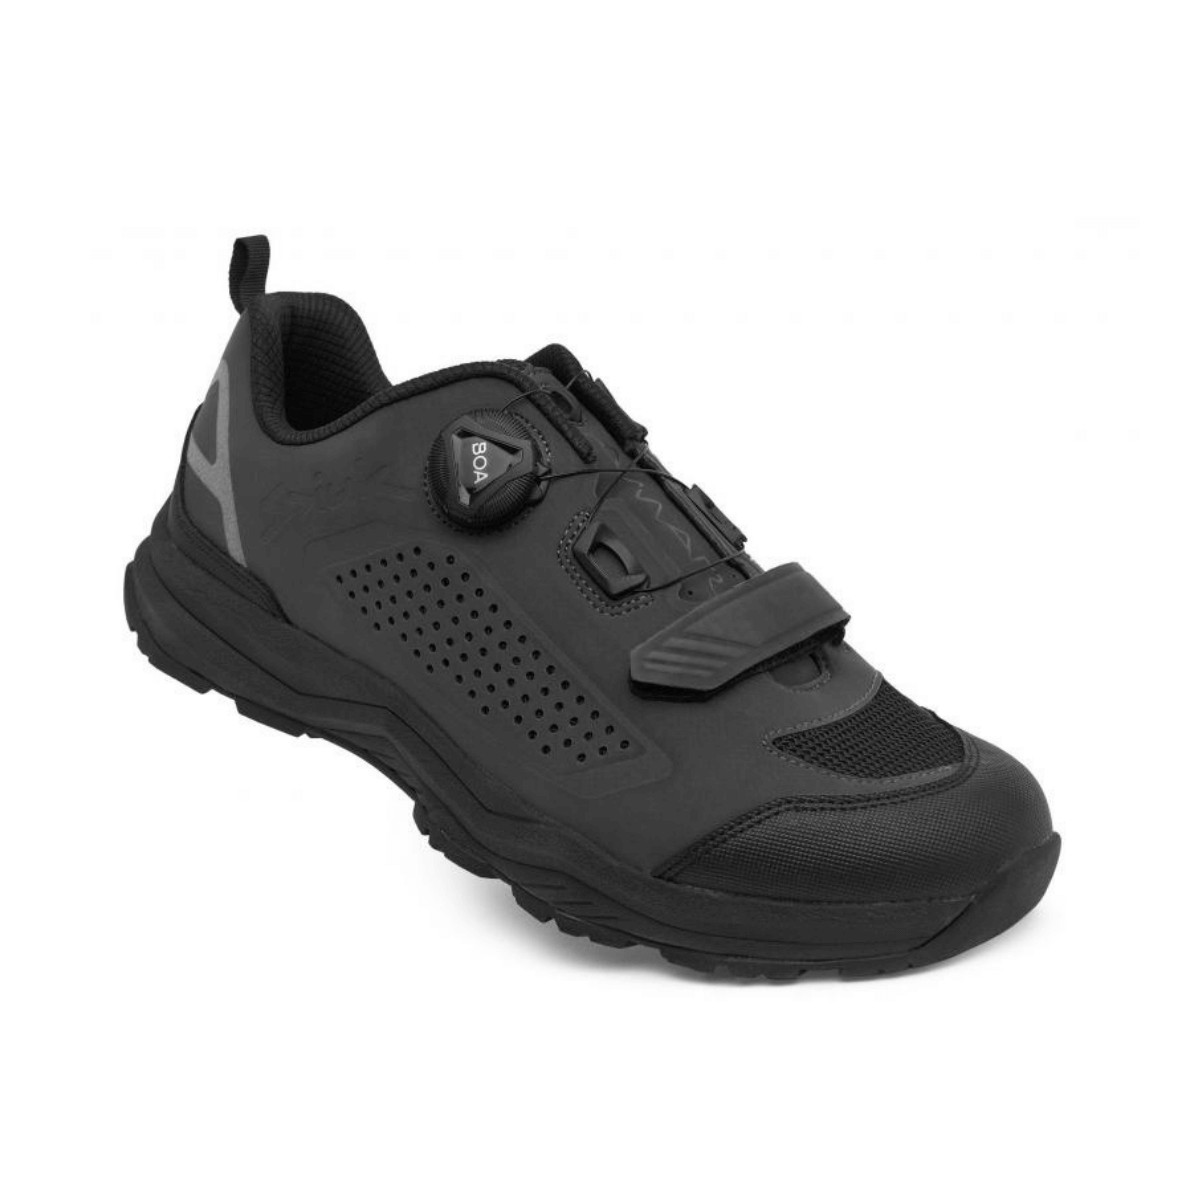 Spiuk Amara MTB Shoes Black, Size 41 - EUR